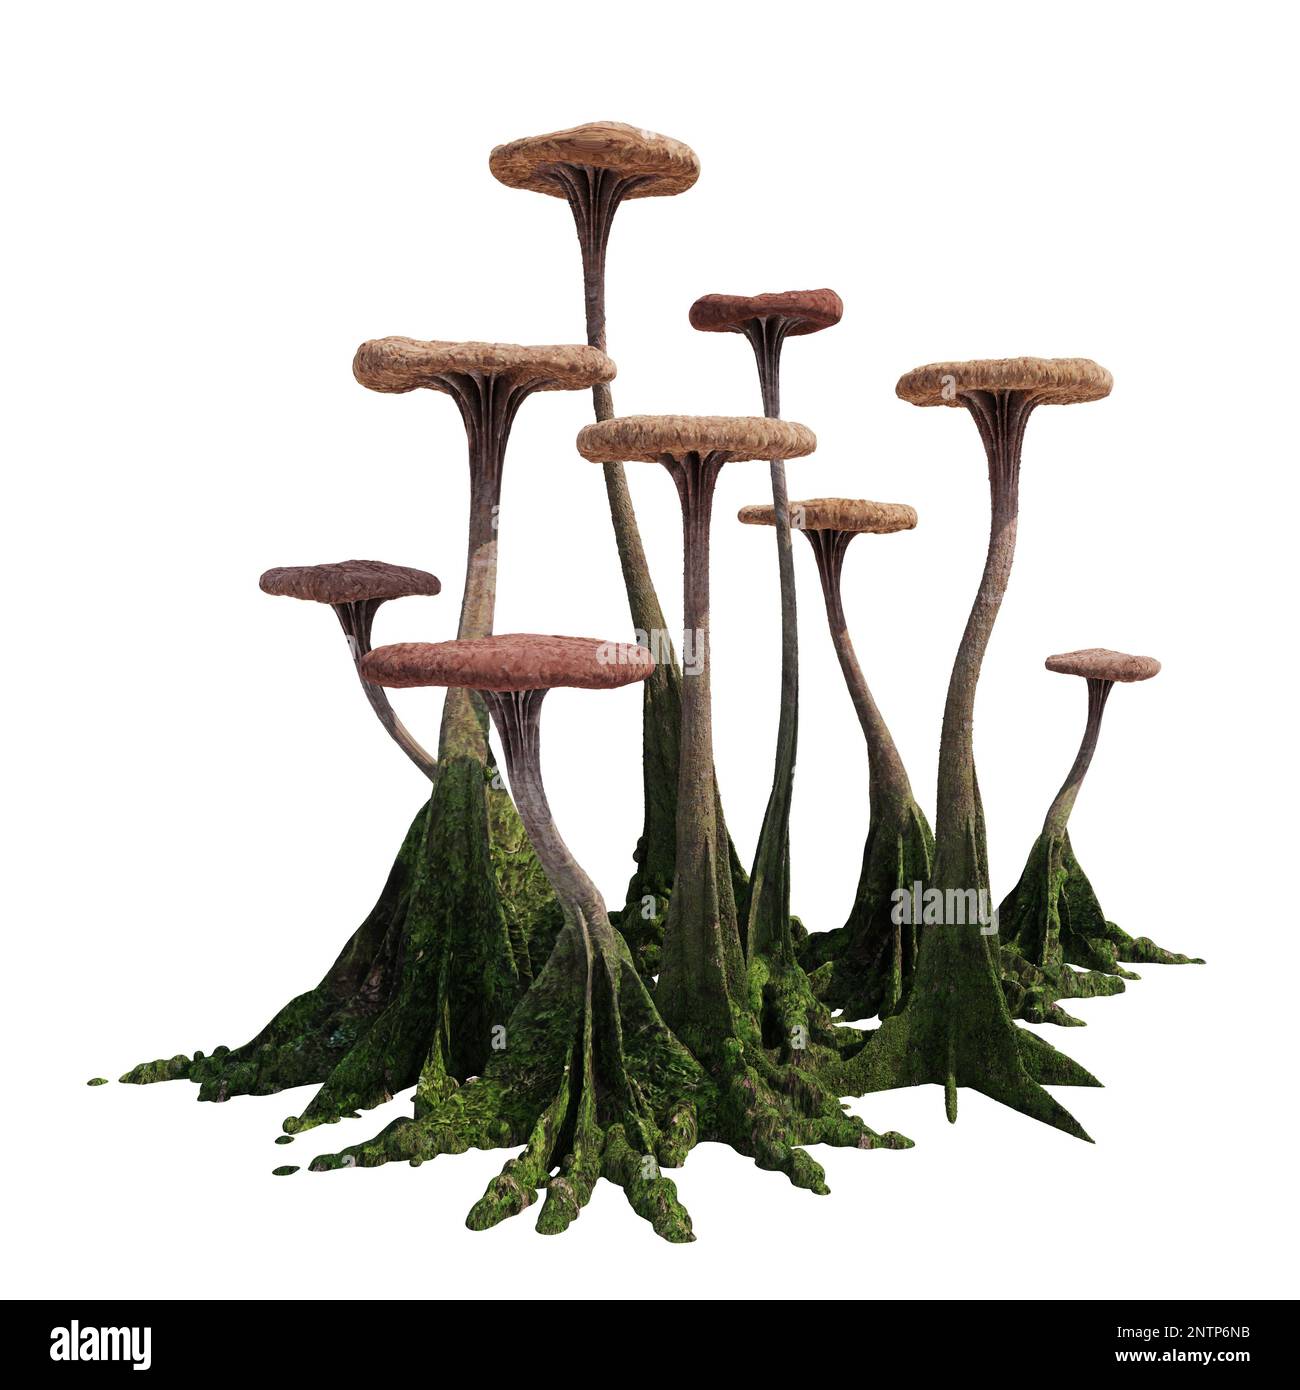 mushrooms, strange alien fungus, isolated on white background Stock Photo